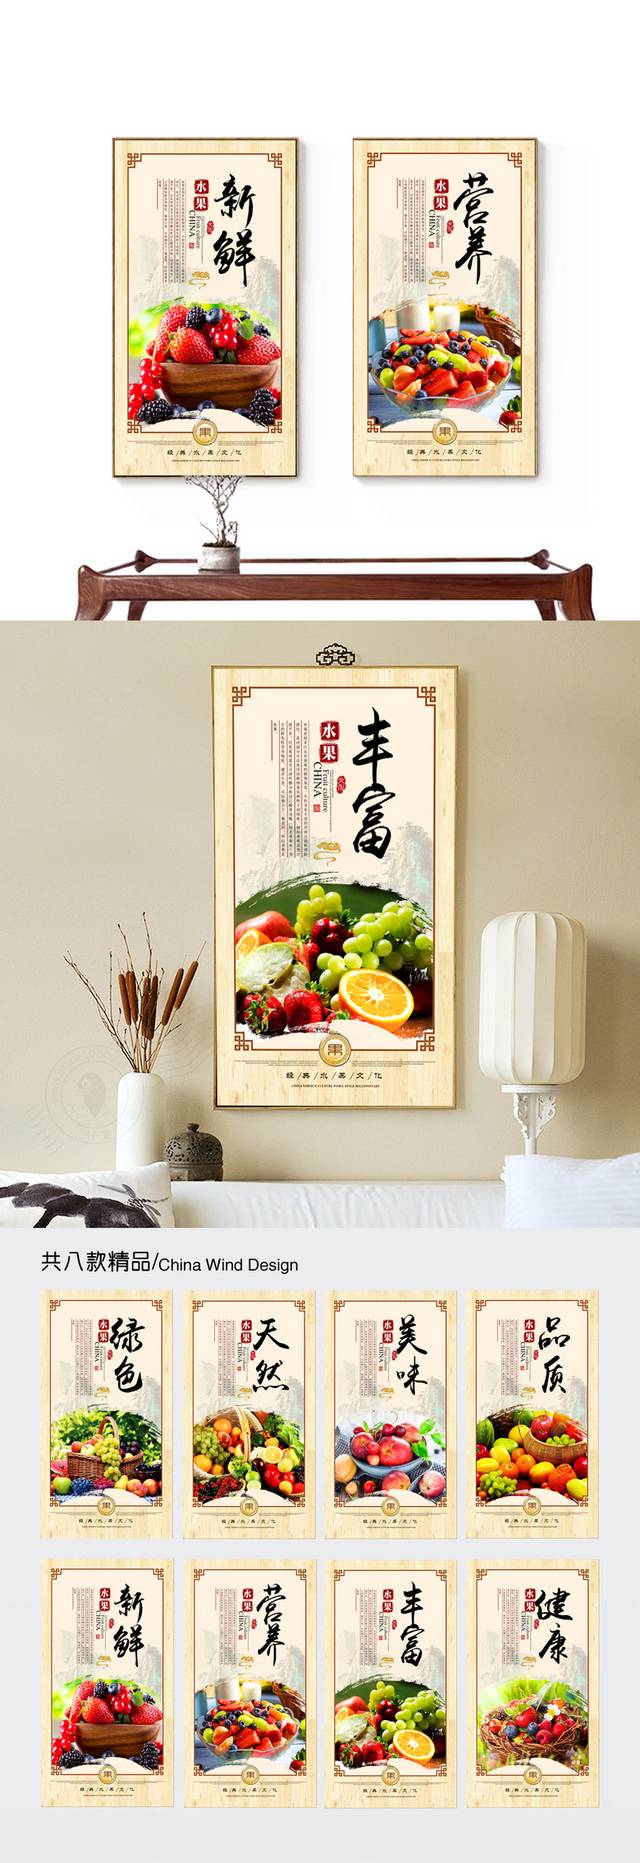 新鲜水果餐饮文化挂画展板设计